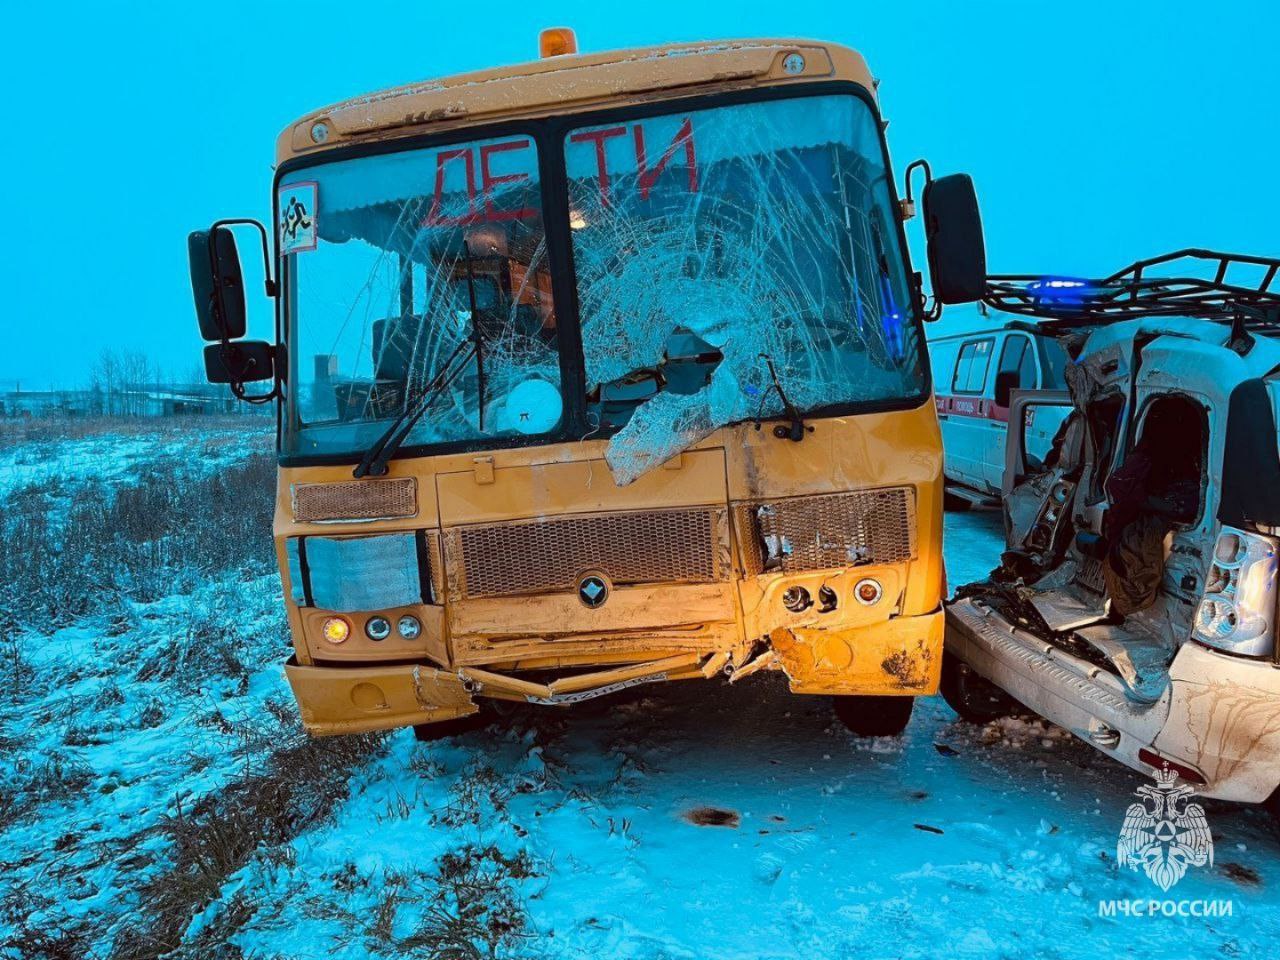 Трое детей и четверо взрослых пострадали в ДТП со школьным автобусом в Башкирии